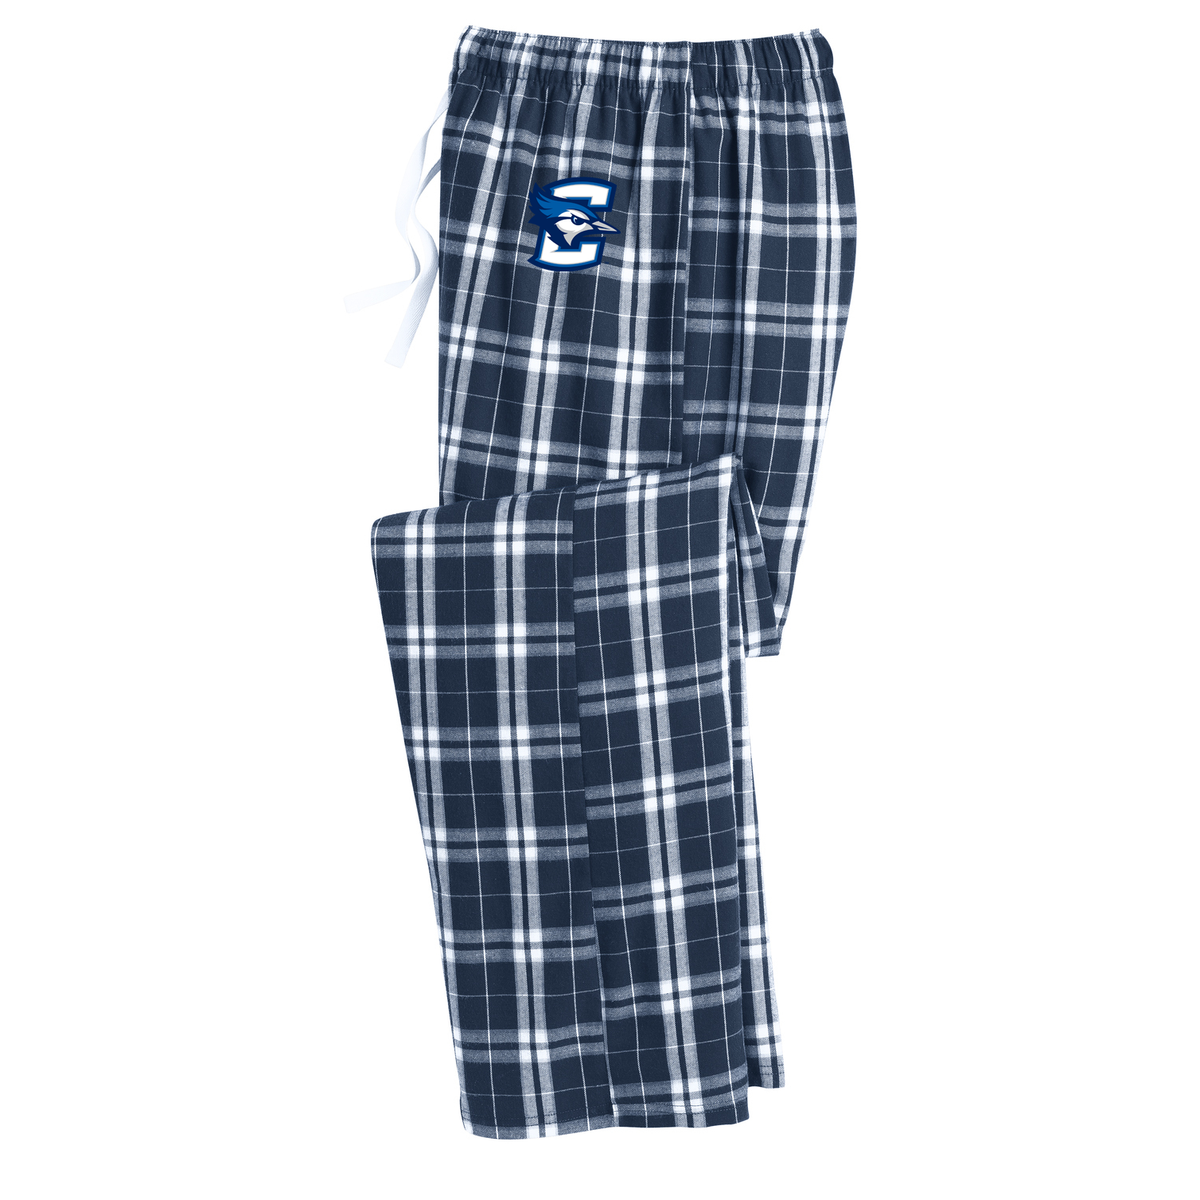 Creighton University Lacrosse Plaid Pajama Pants